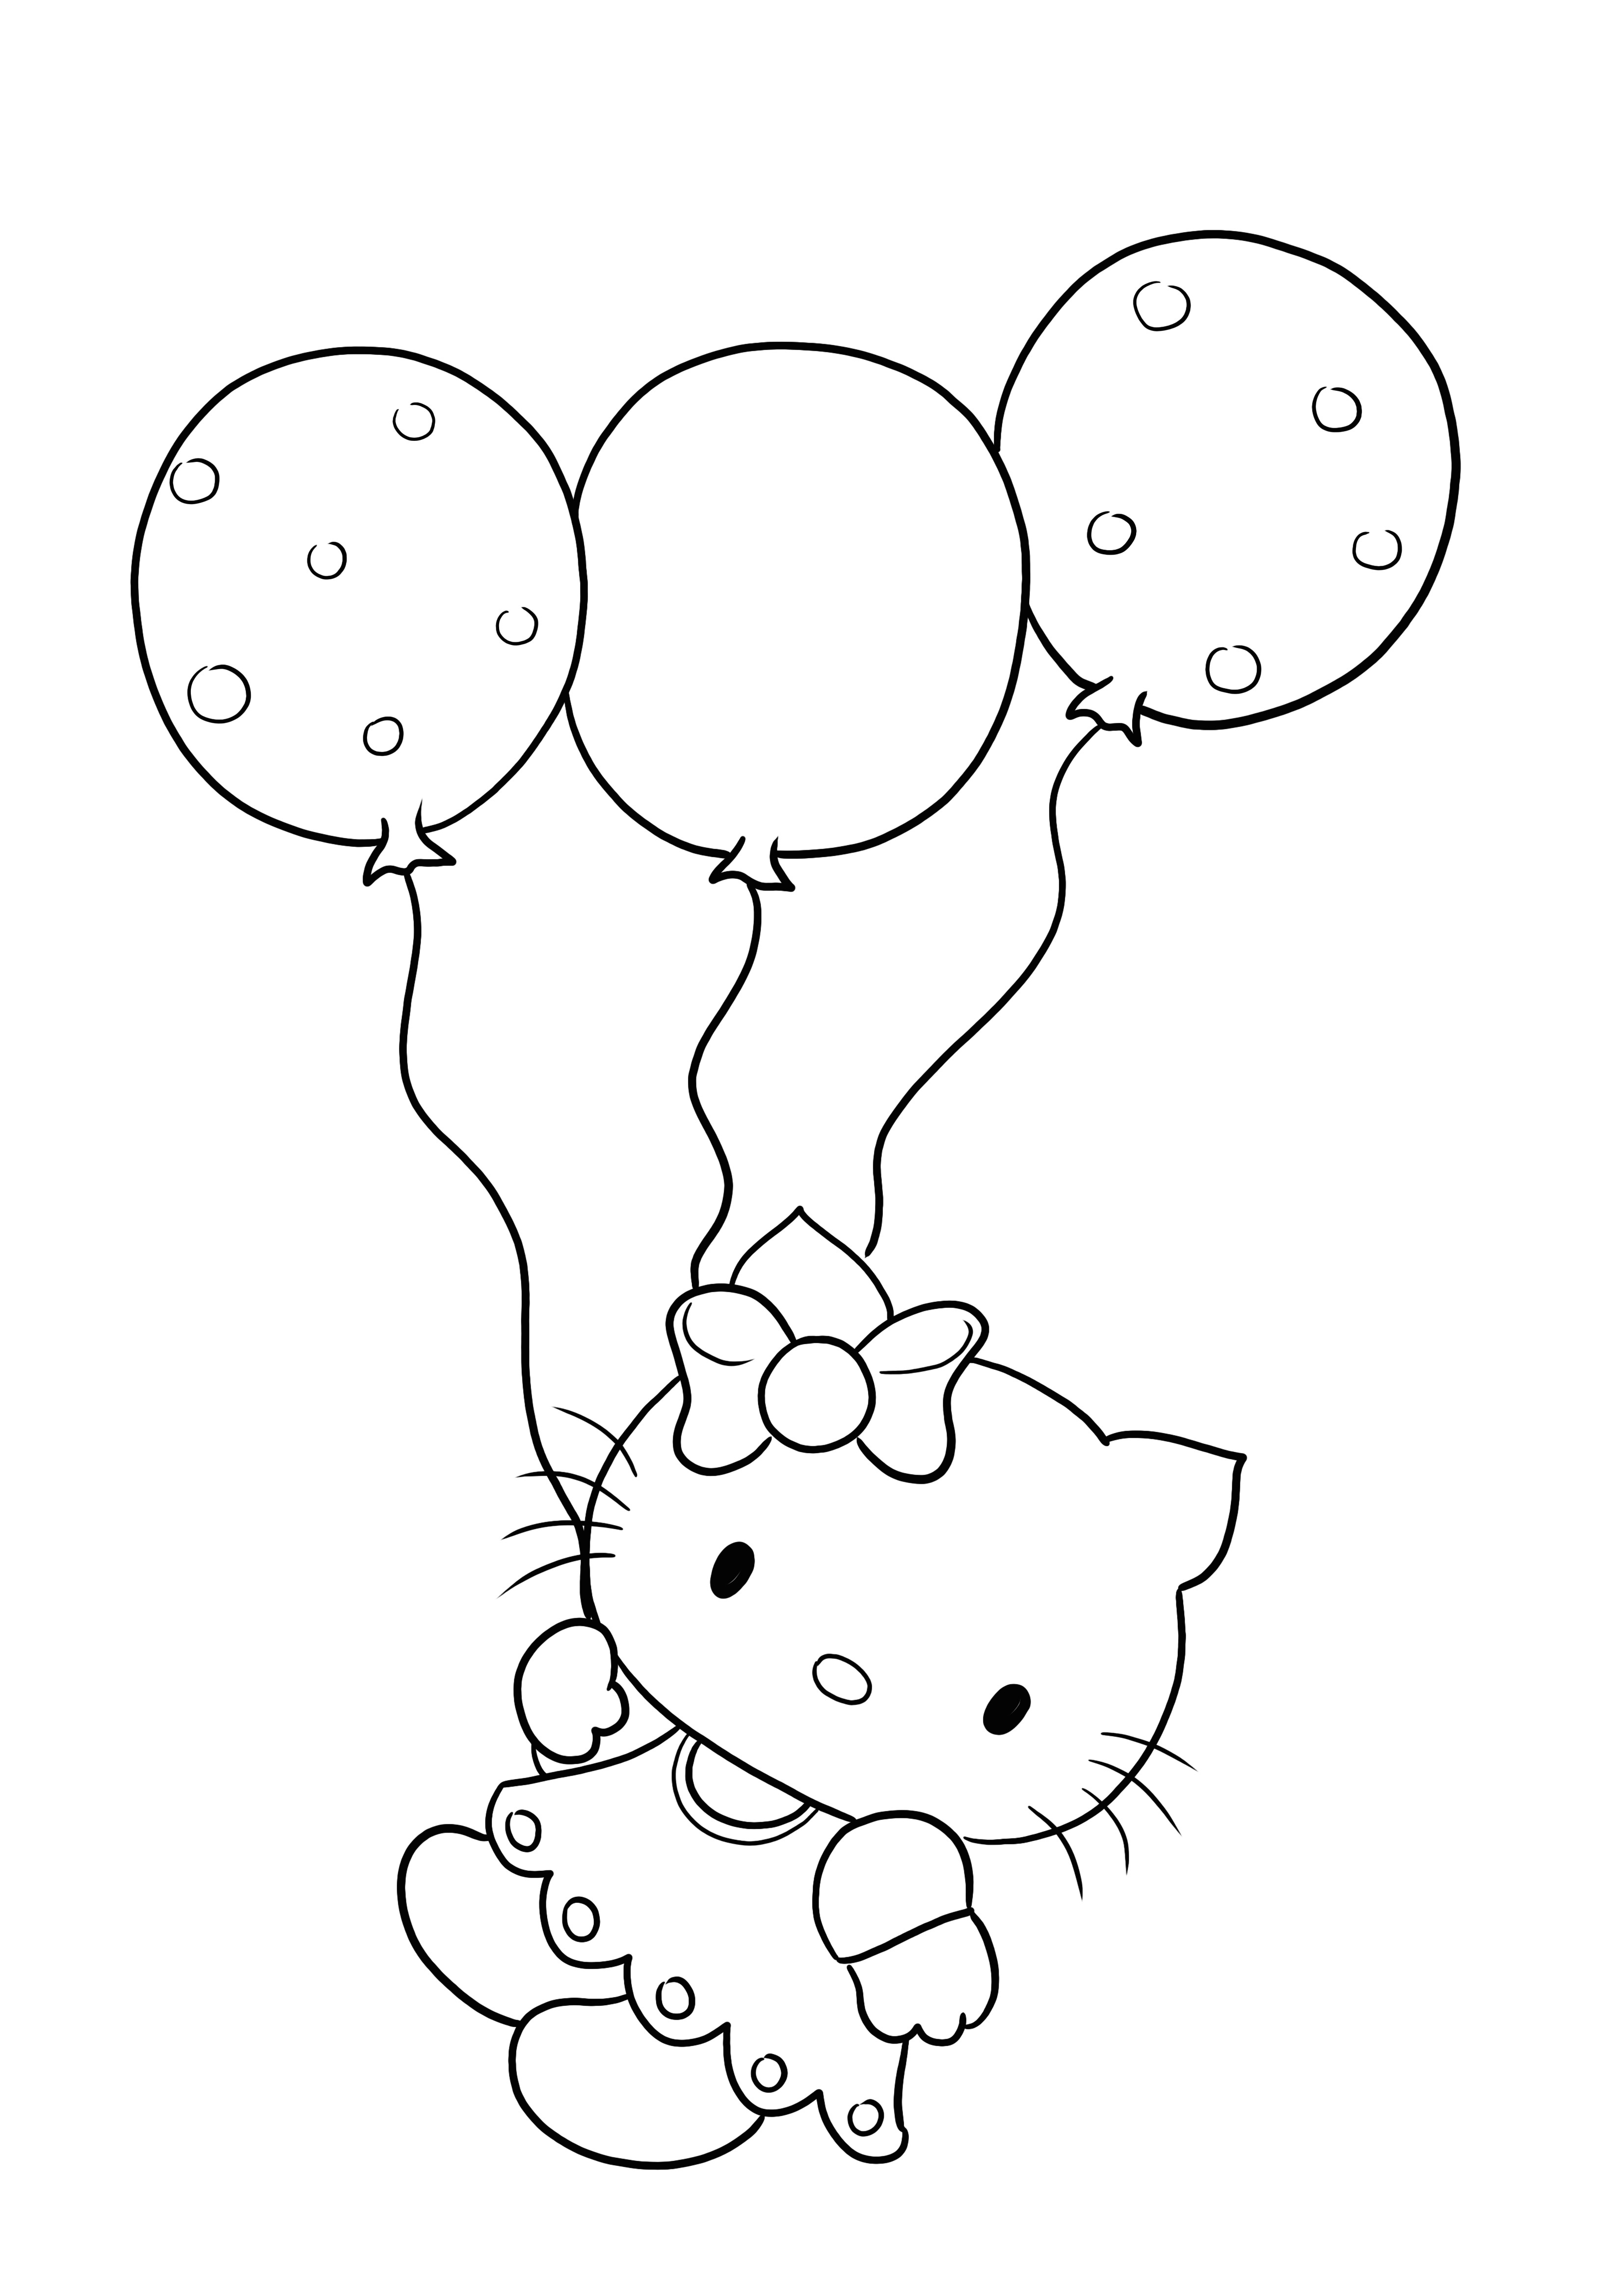 Hello Kitty dan balon untuk dicetak dan diwarnai gratis untuk anak-anak